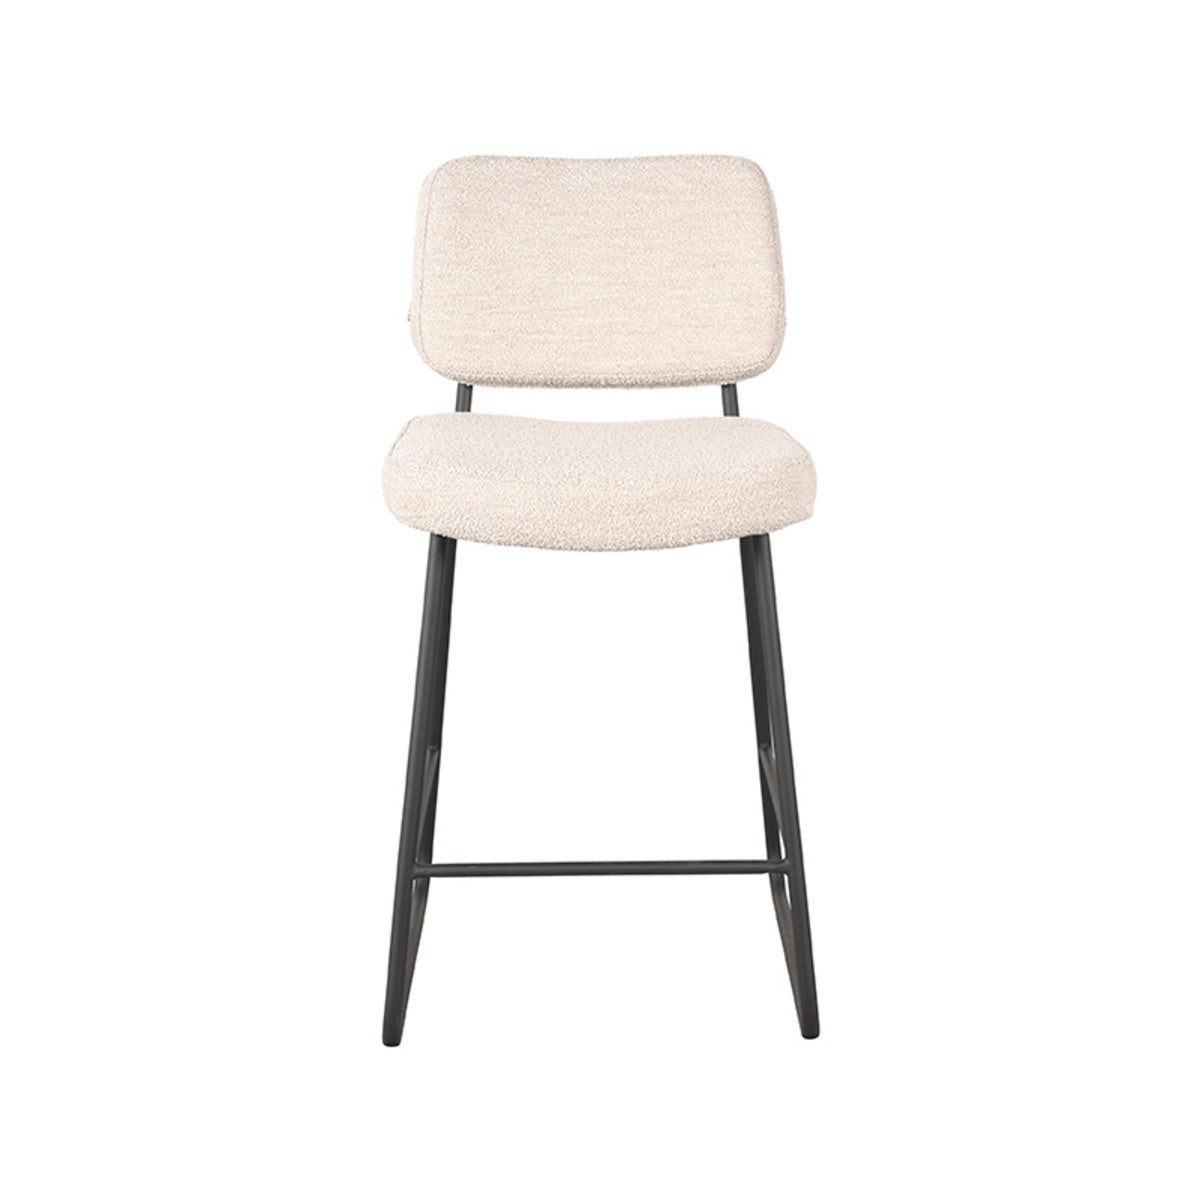 LABEL51 Bar stool Noah - Natural - Boucle - Seat height 65 |